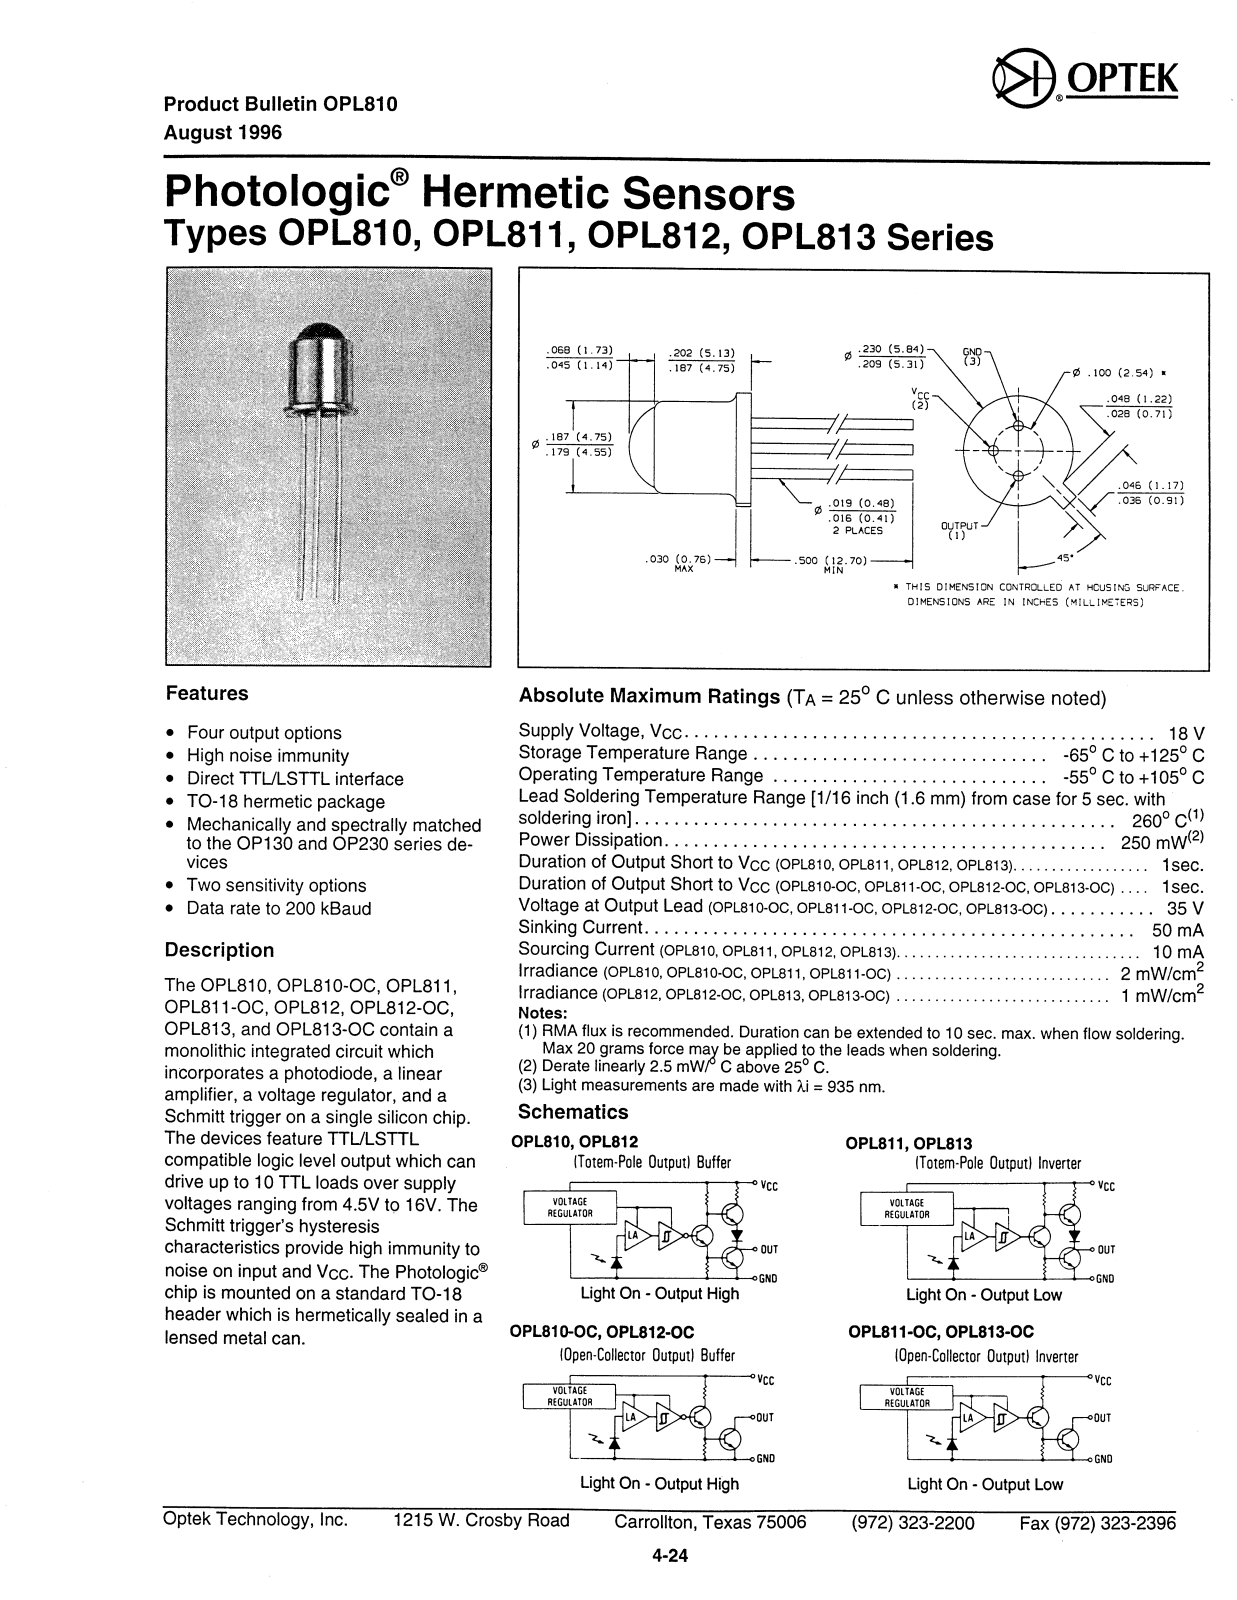 OPTEK OPL813, OPL811-OC, OPL812-OC, OPL810-OC, OPL810 Datasheet